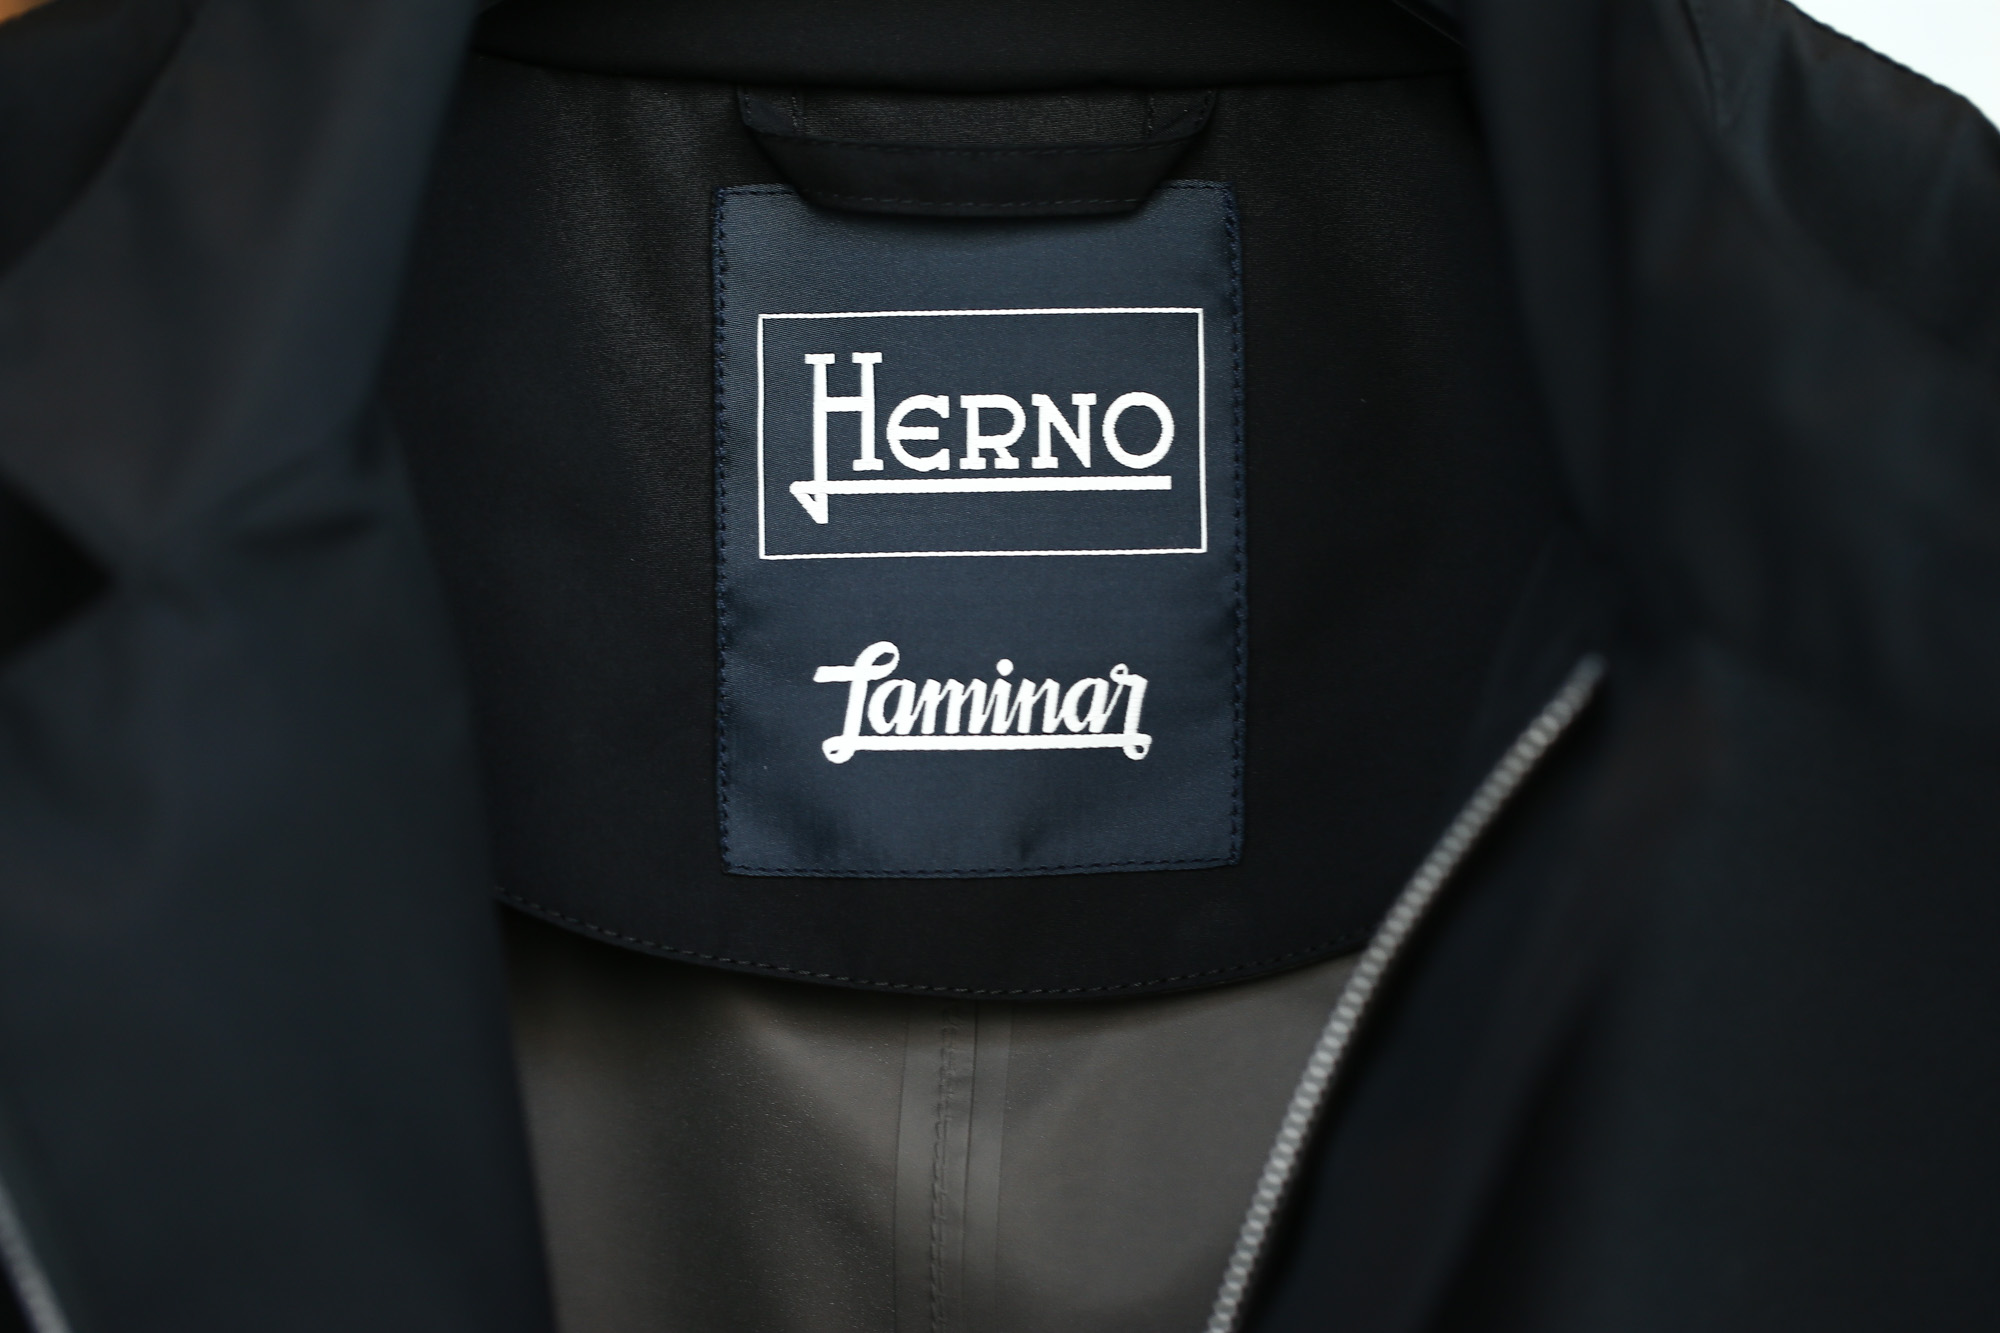 HERNO (ヘルノ) GA0008U LAMINAR Stand Neck Jacket (ラミナー スタンドネック ジャケット) GORE-TEX (ゴアテックス) ナイロンジャケット BLACK (ブラック・9300) 2018 春夏新作 herno ヘルノ 愛知 名古屋 Alto e Diritto アルト エ デリット